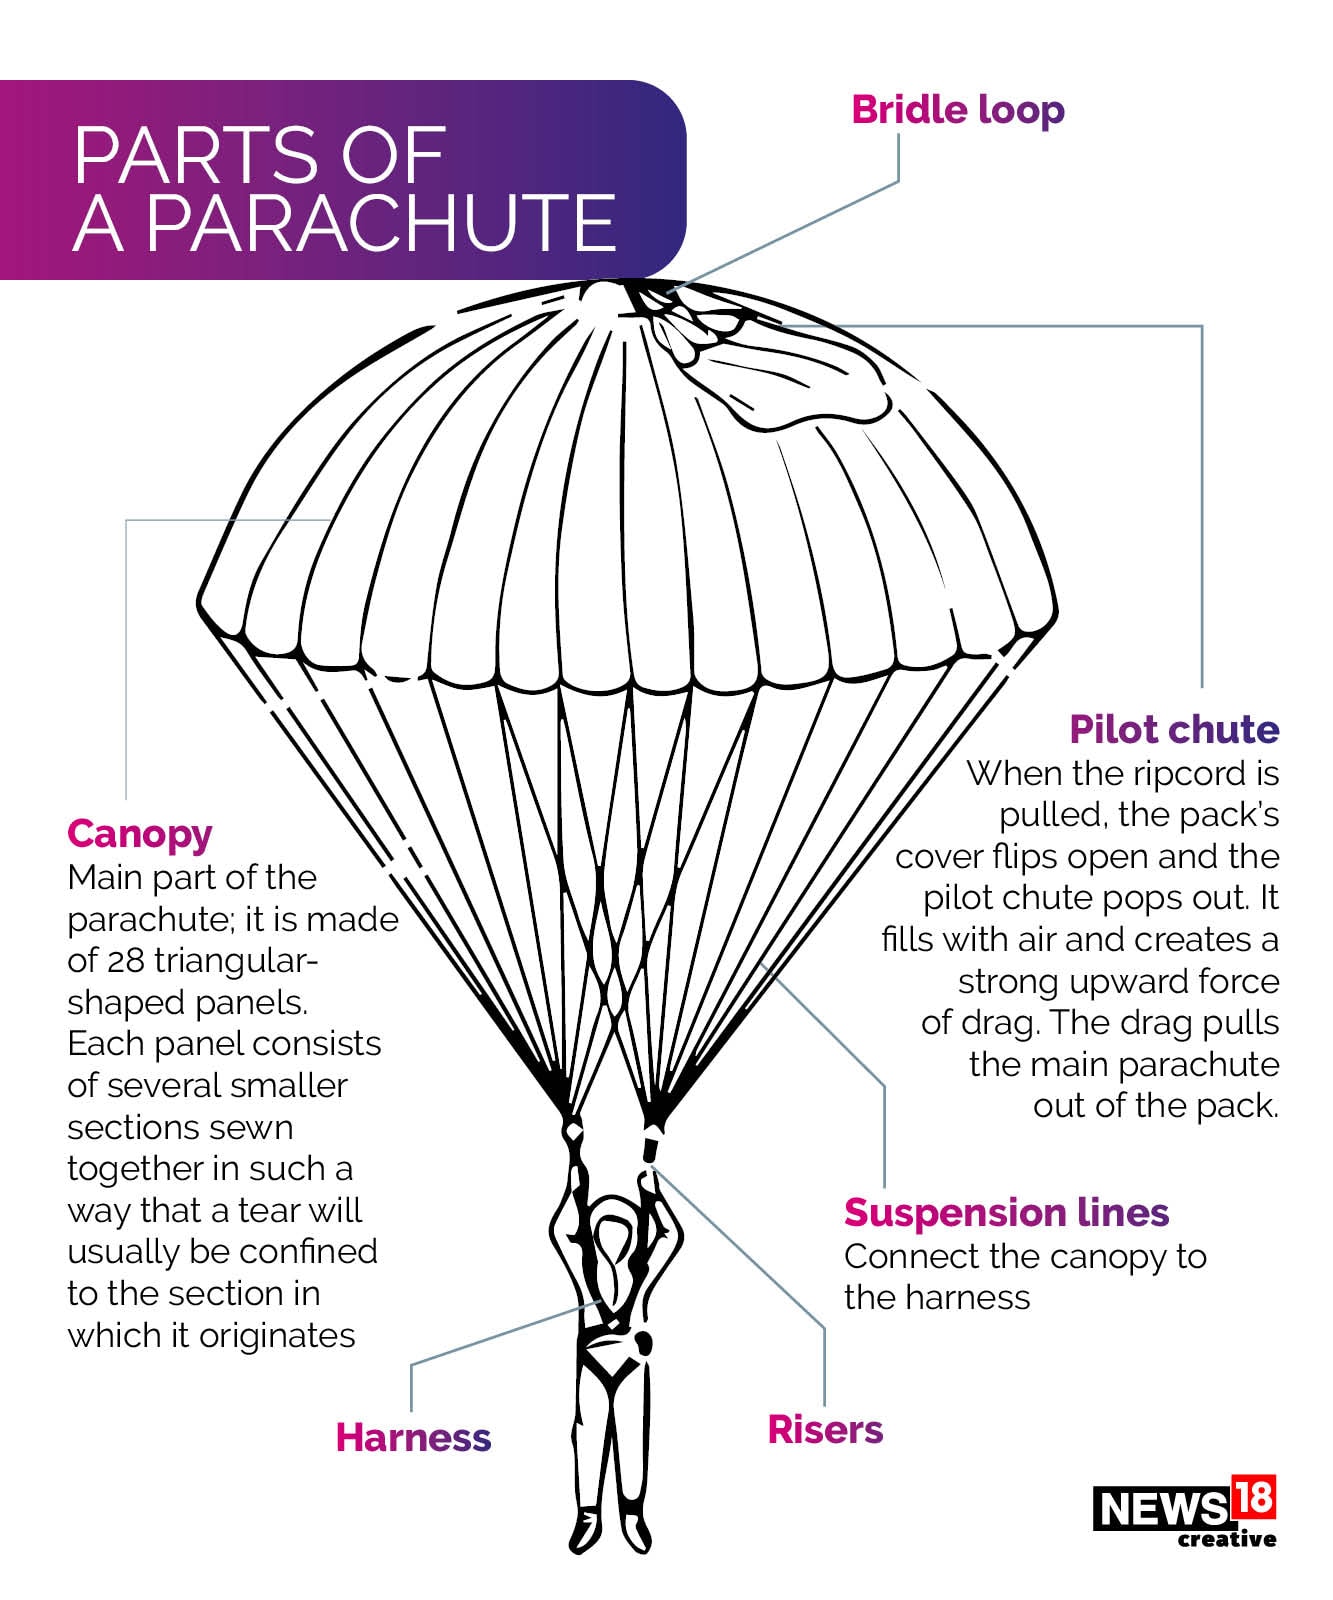 Parachute Components | vlr.eng.br